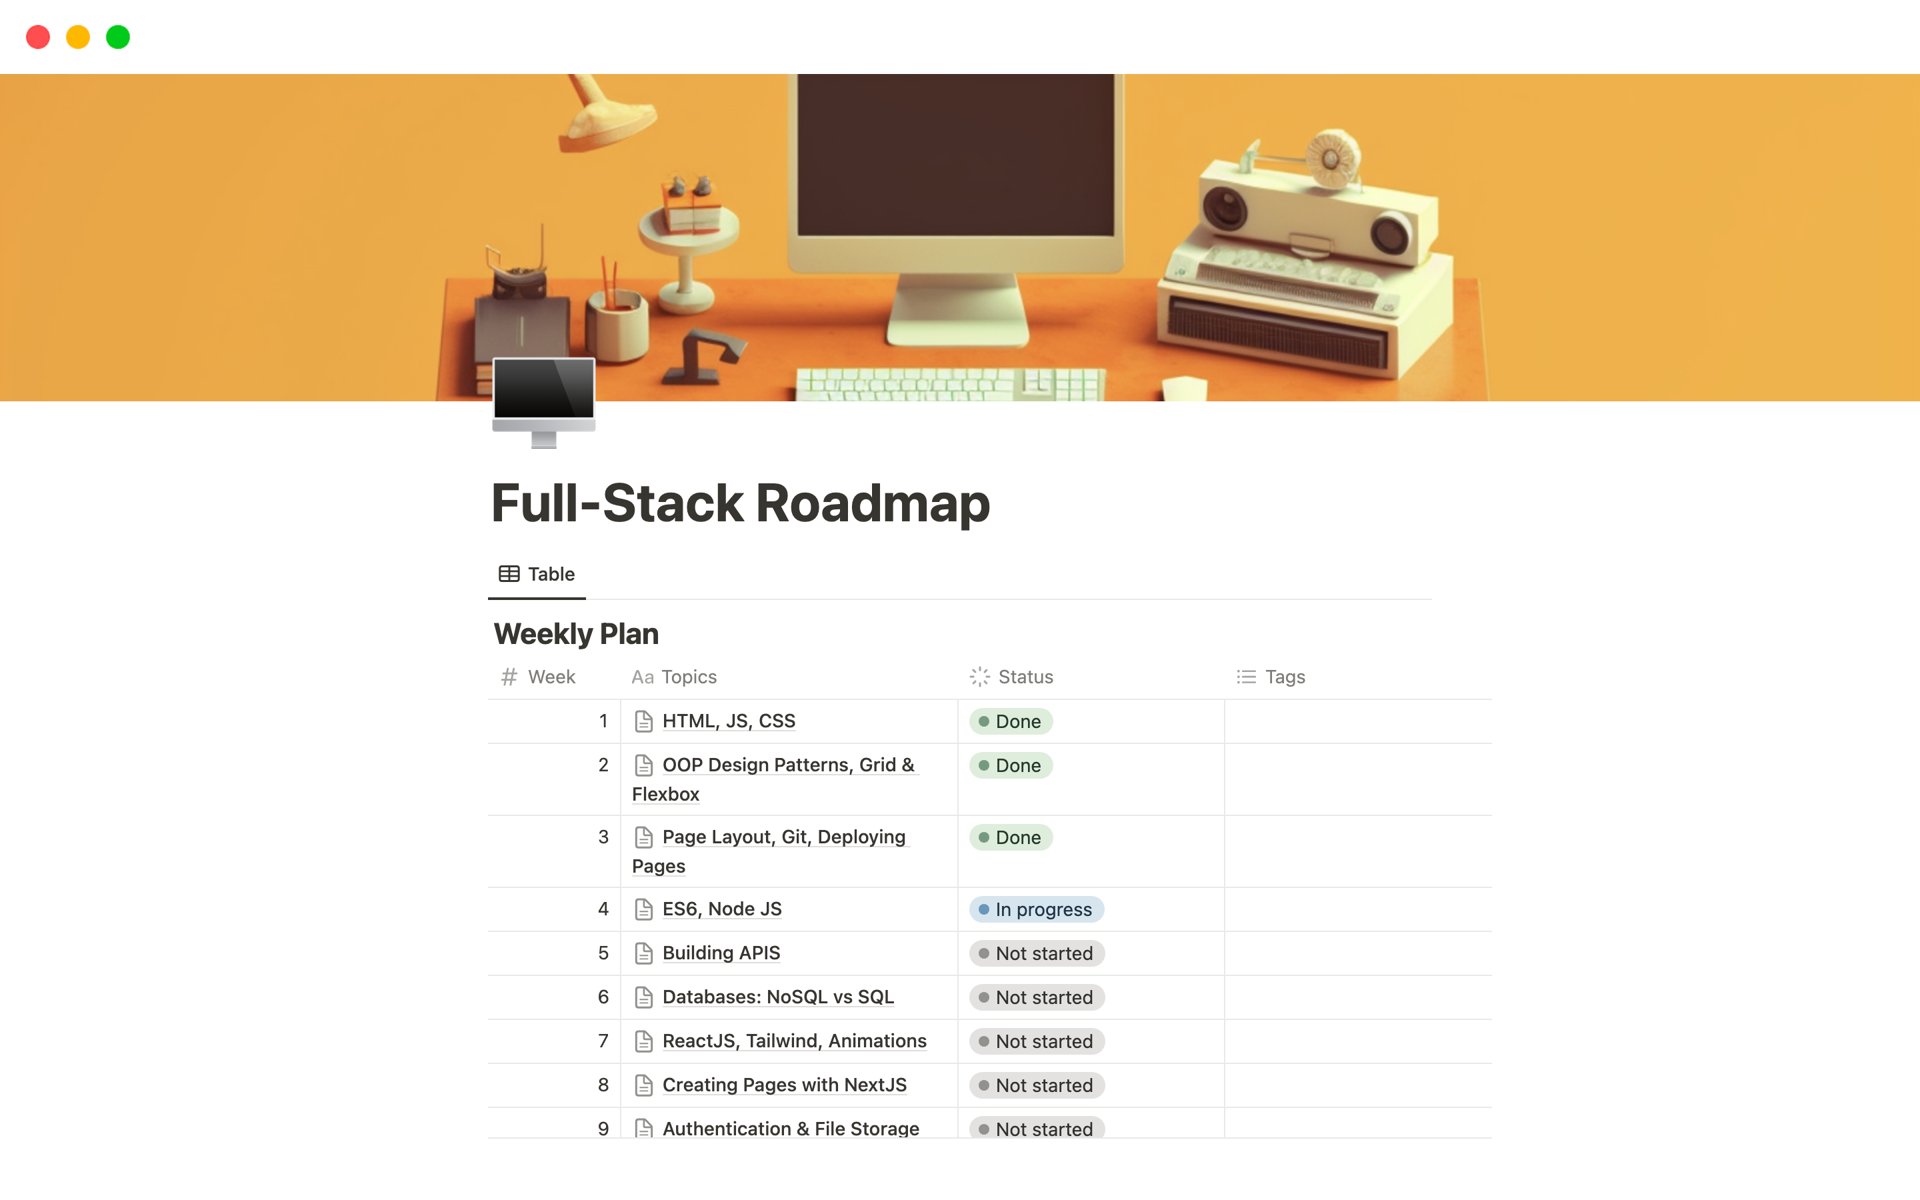 Vista previa de una plantilla para Full-Stack Roadmap